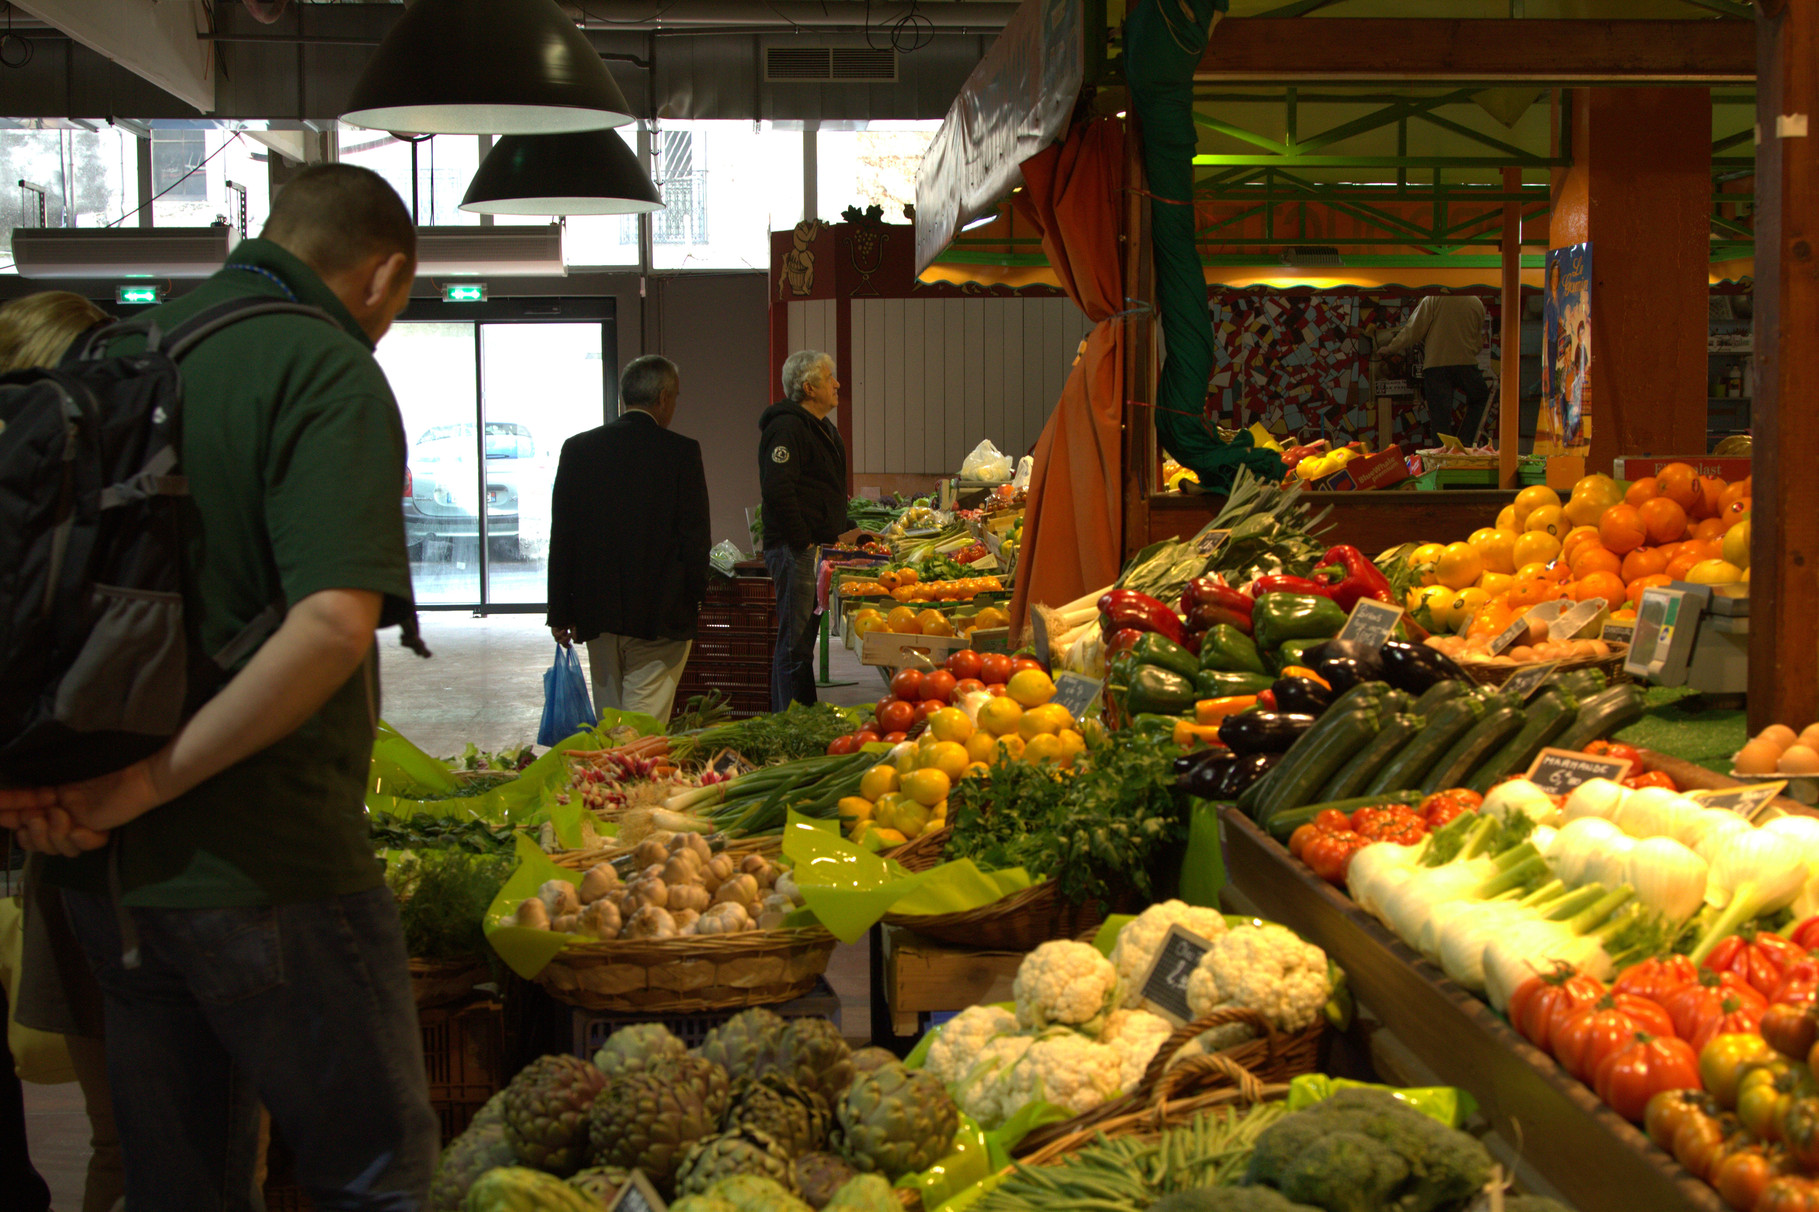 L'étal de fruits et légumes - The fruit and vegetables stall.